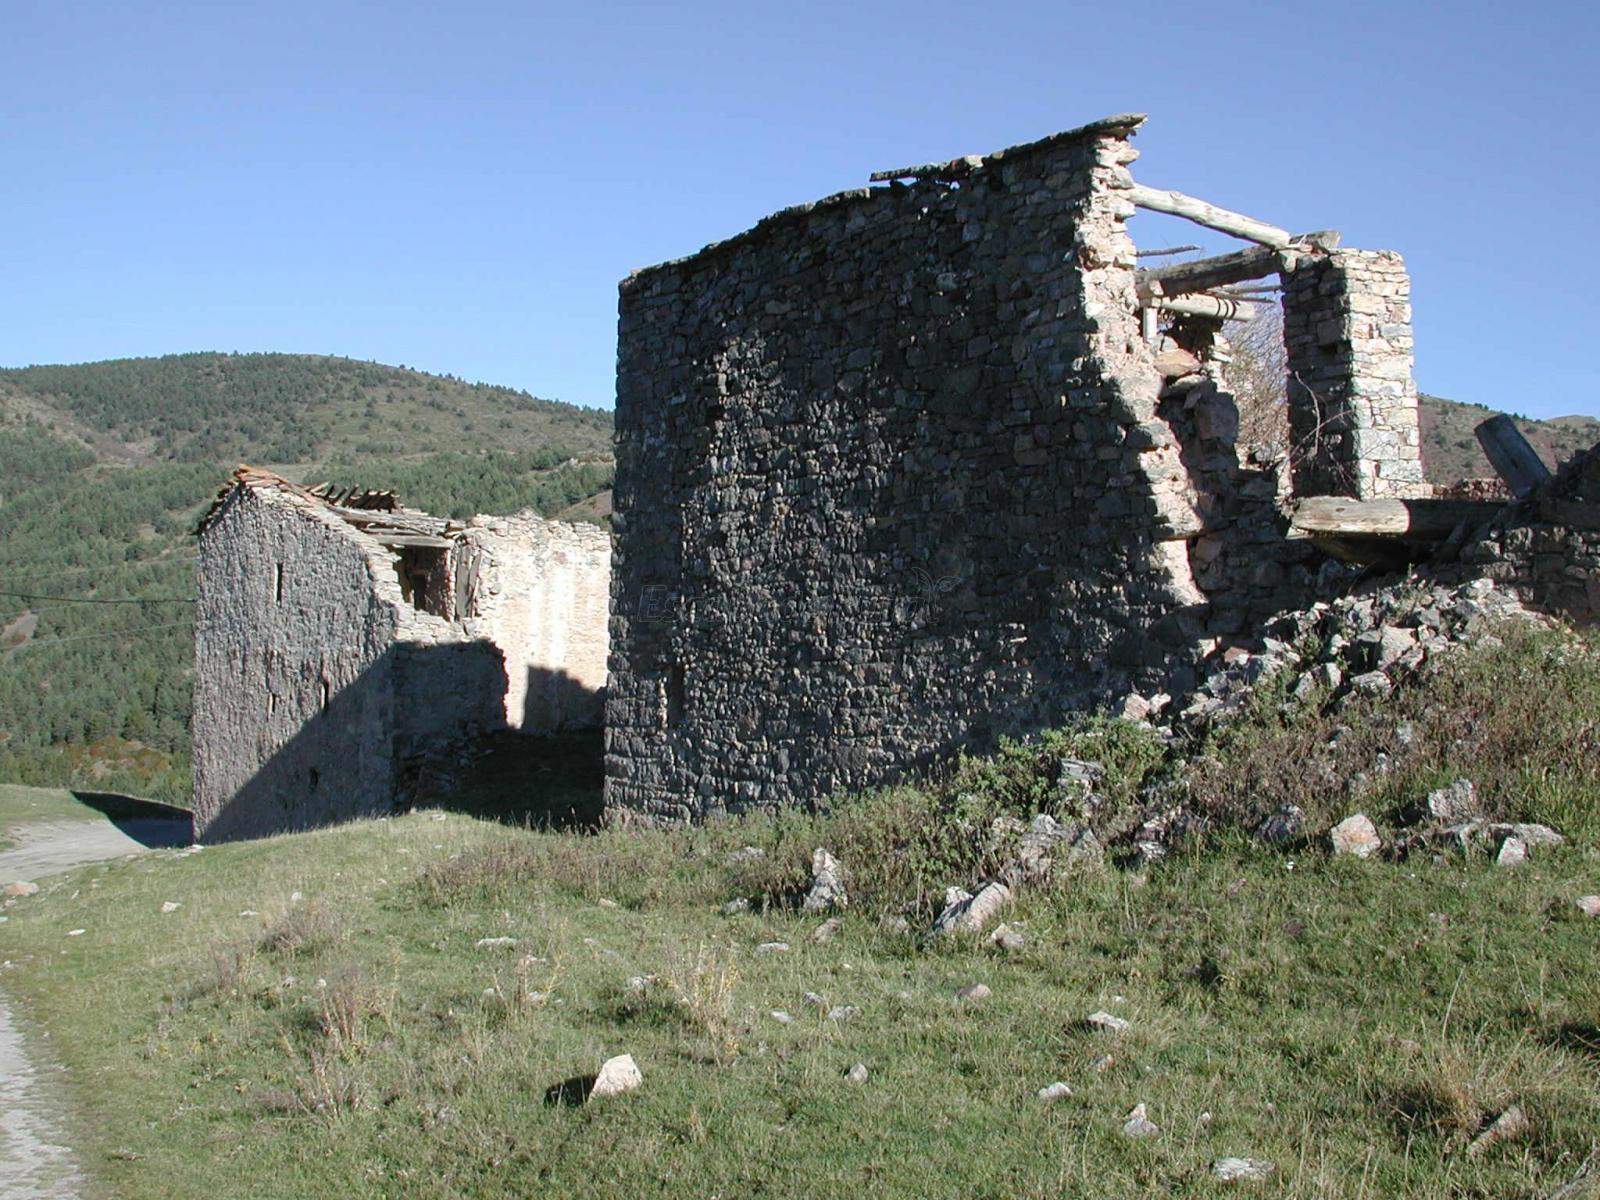 Una empresa de ecoturismo recuperará con criterios sostenibles un pueblo abandonado del Pallars